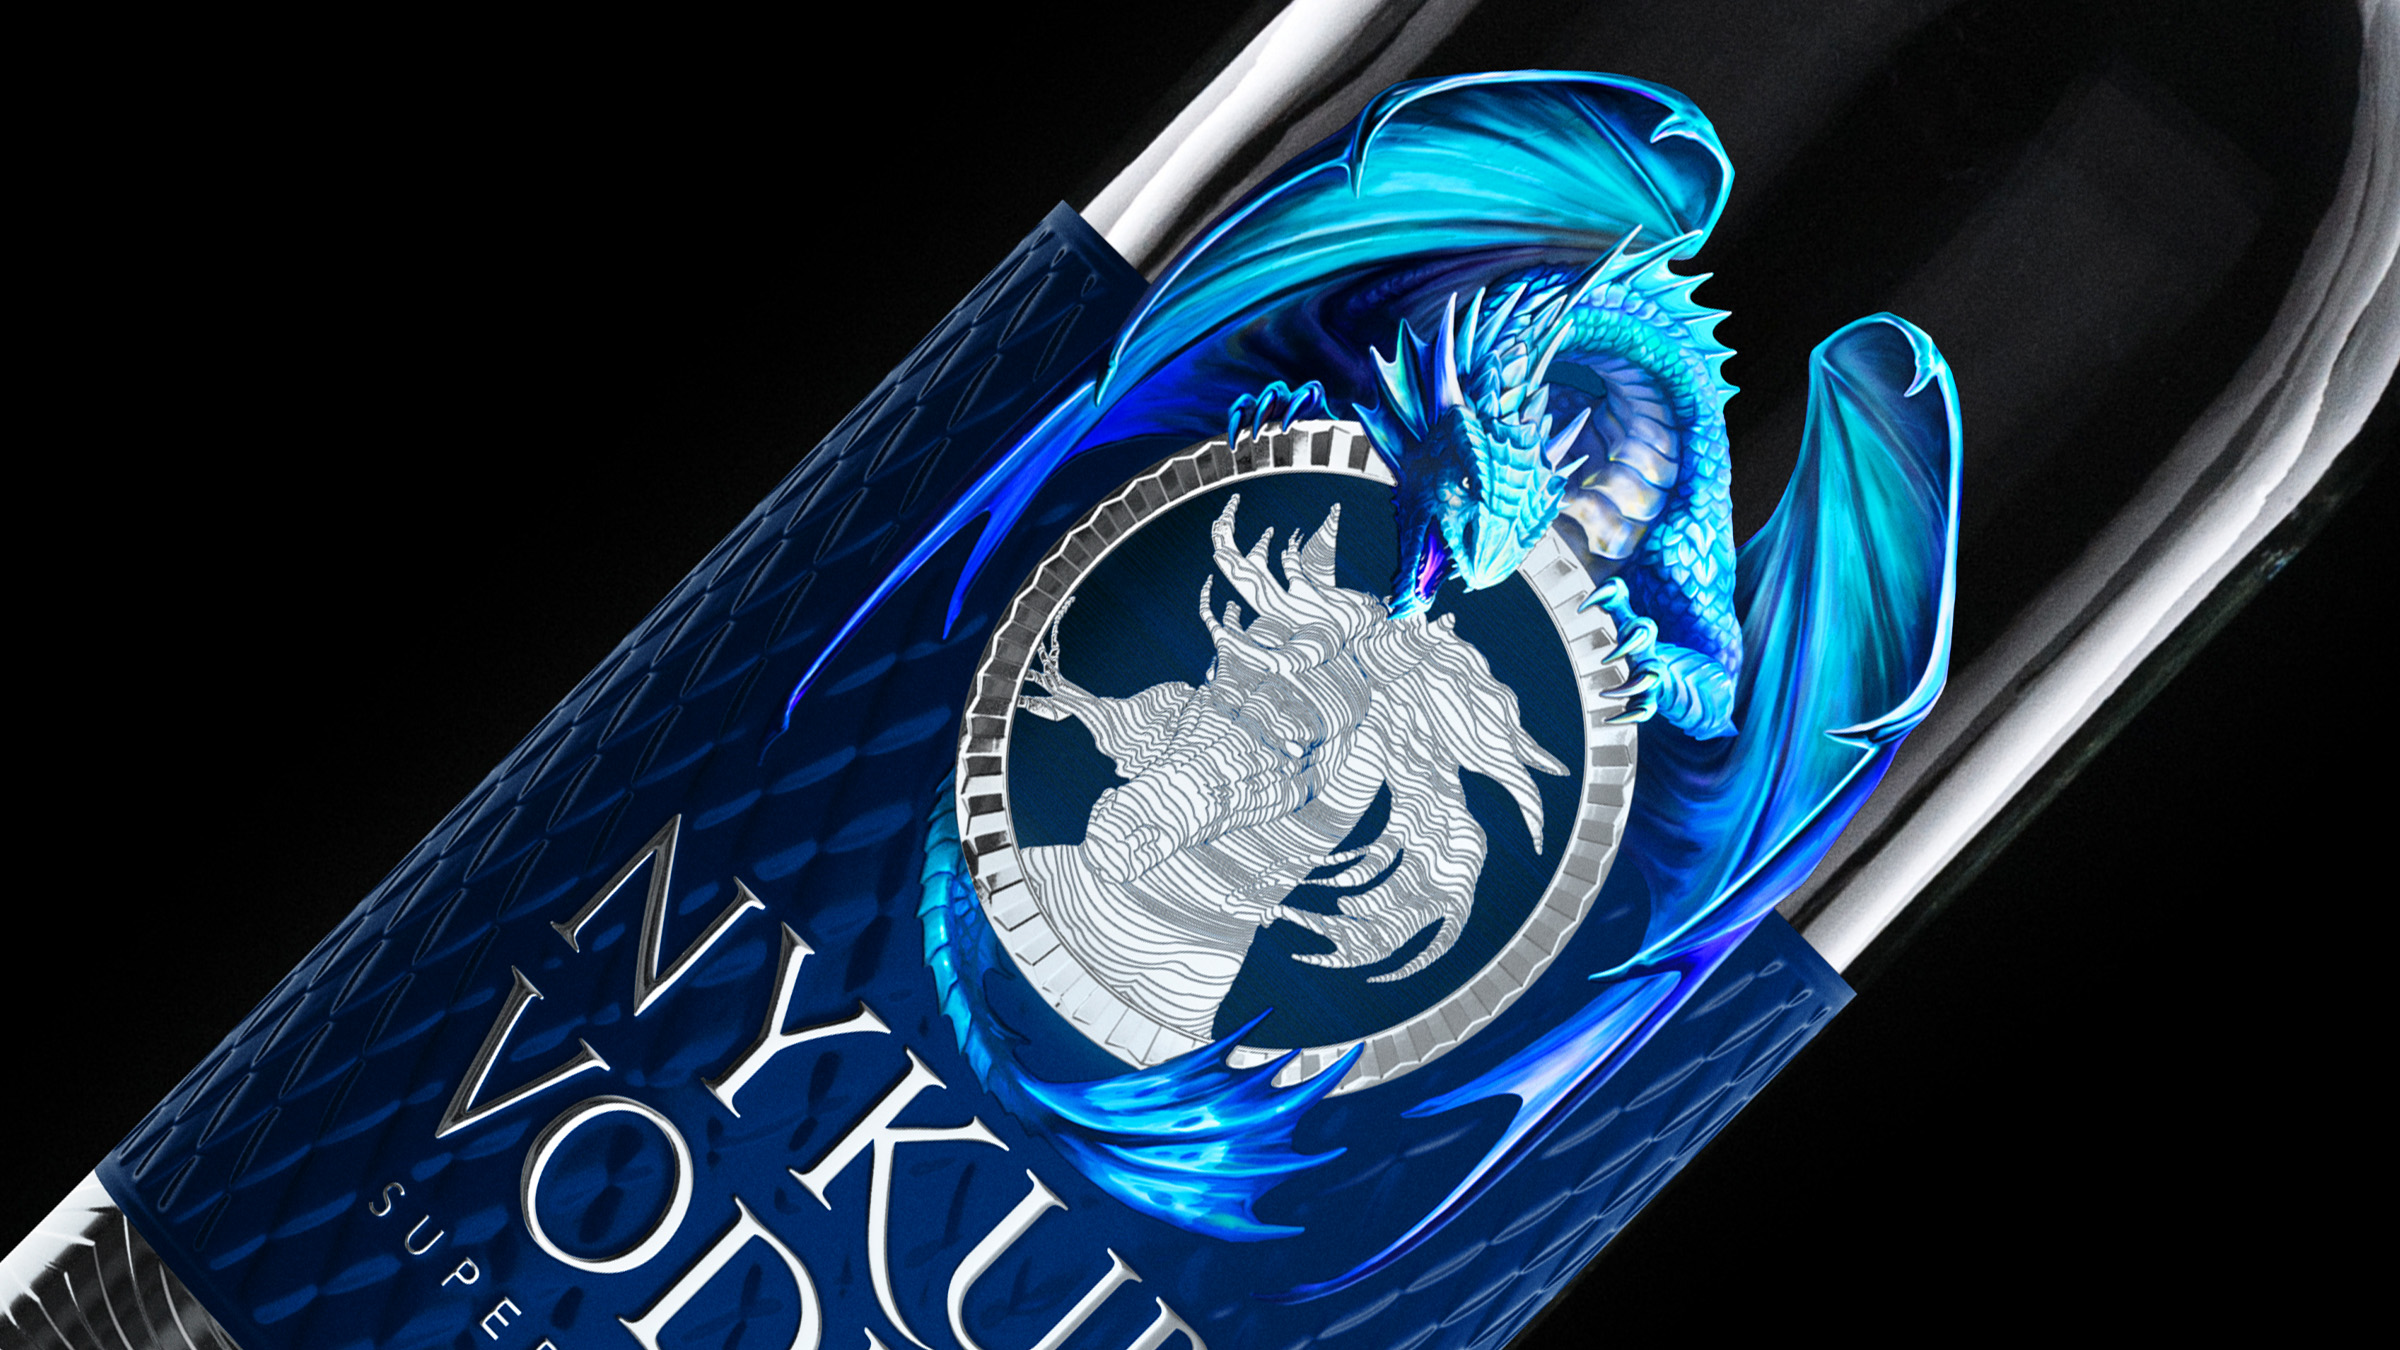 Nykur Vodka Draco Aqua Special Edition by C.Carbon Studio